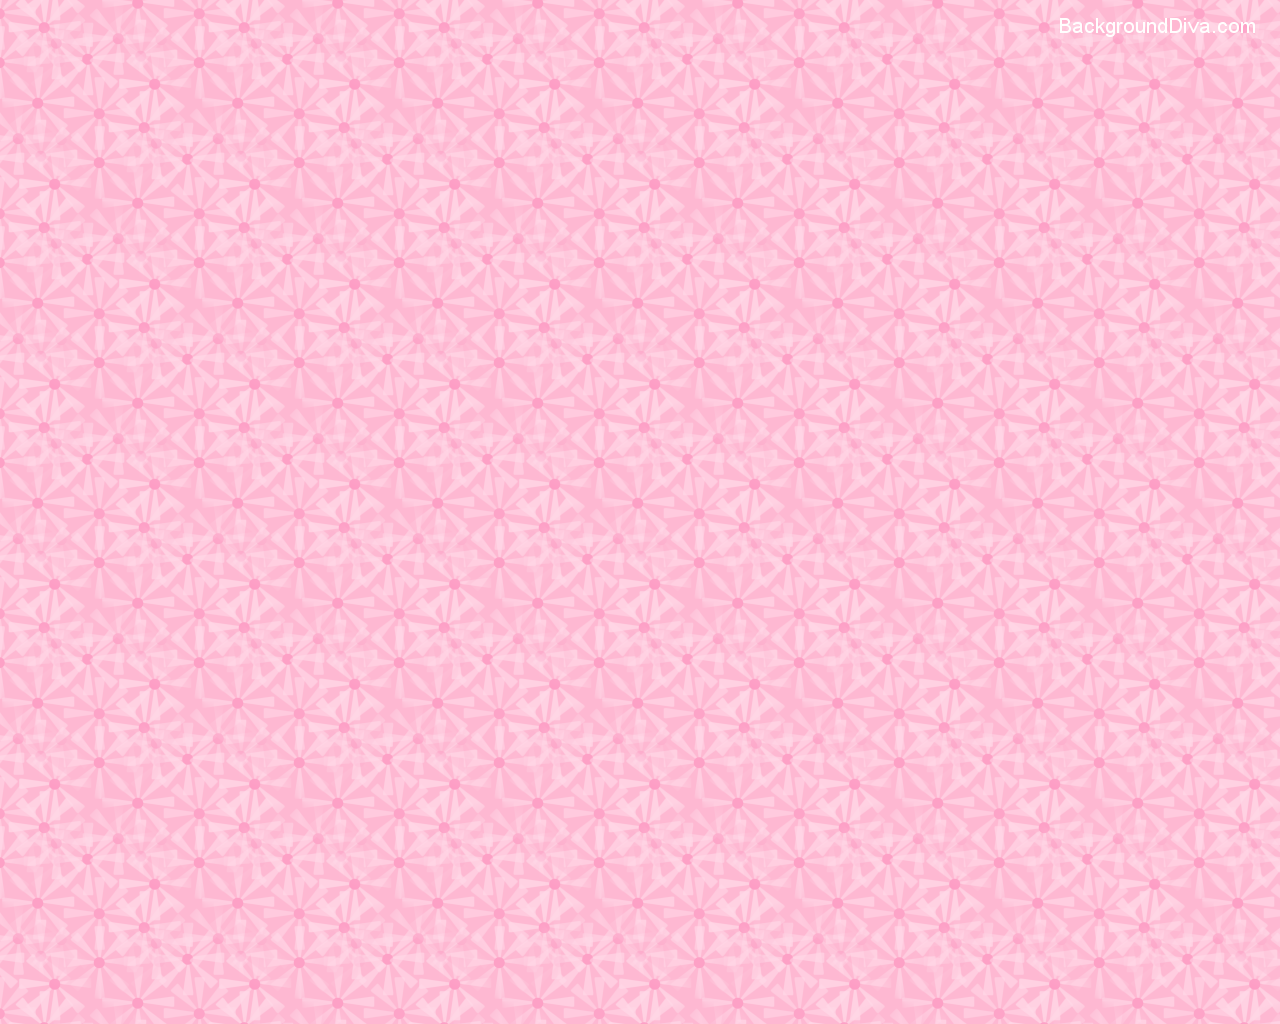 p.51, Light Pink Wallpapers, Light Pink Widescreen Backgrounds